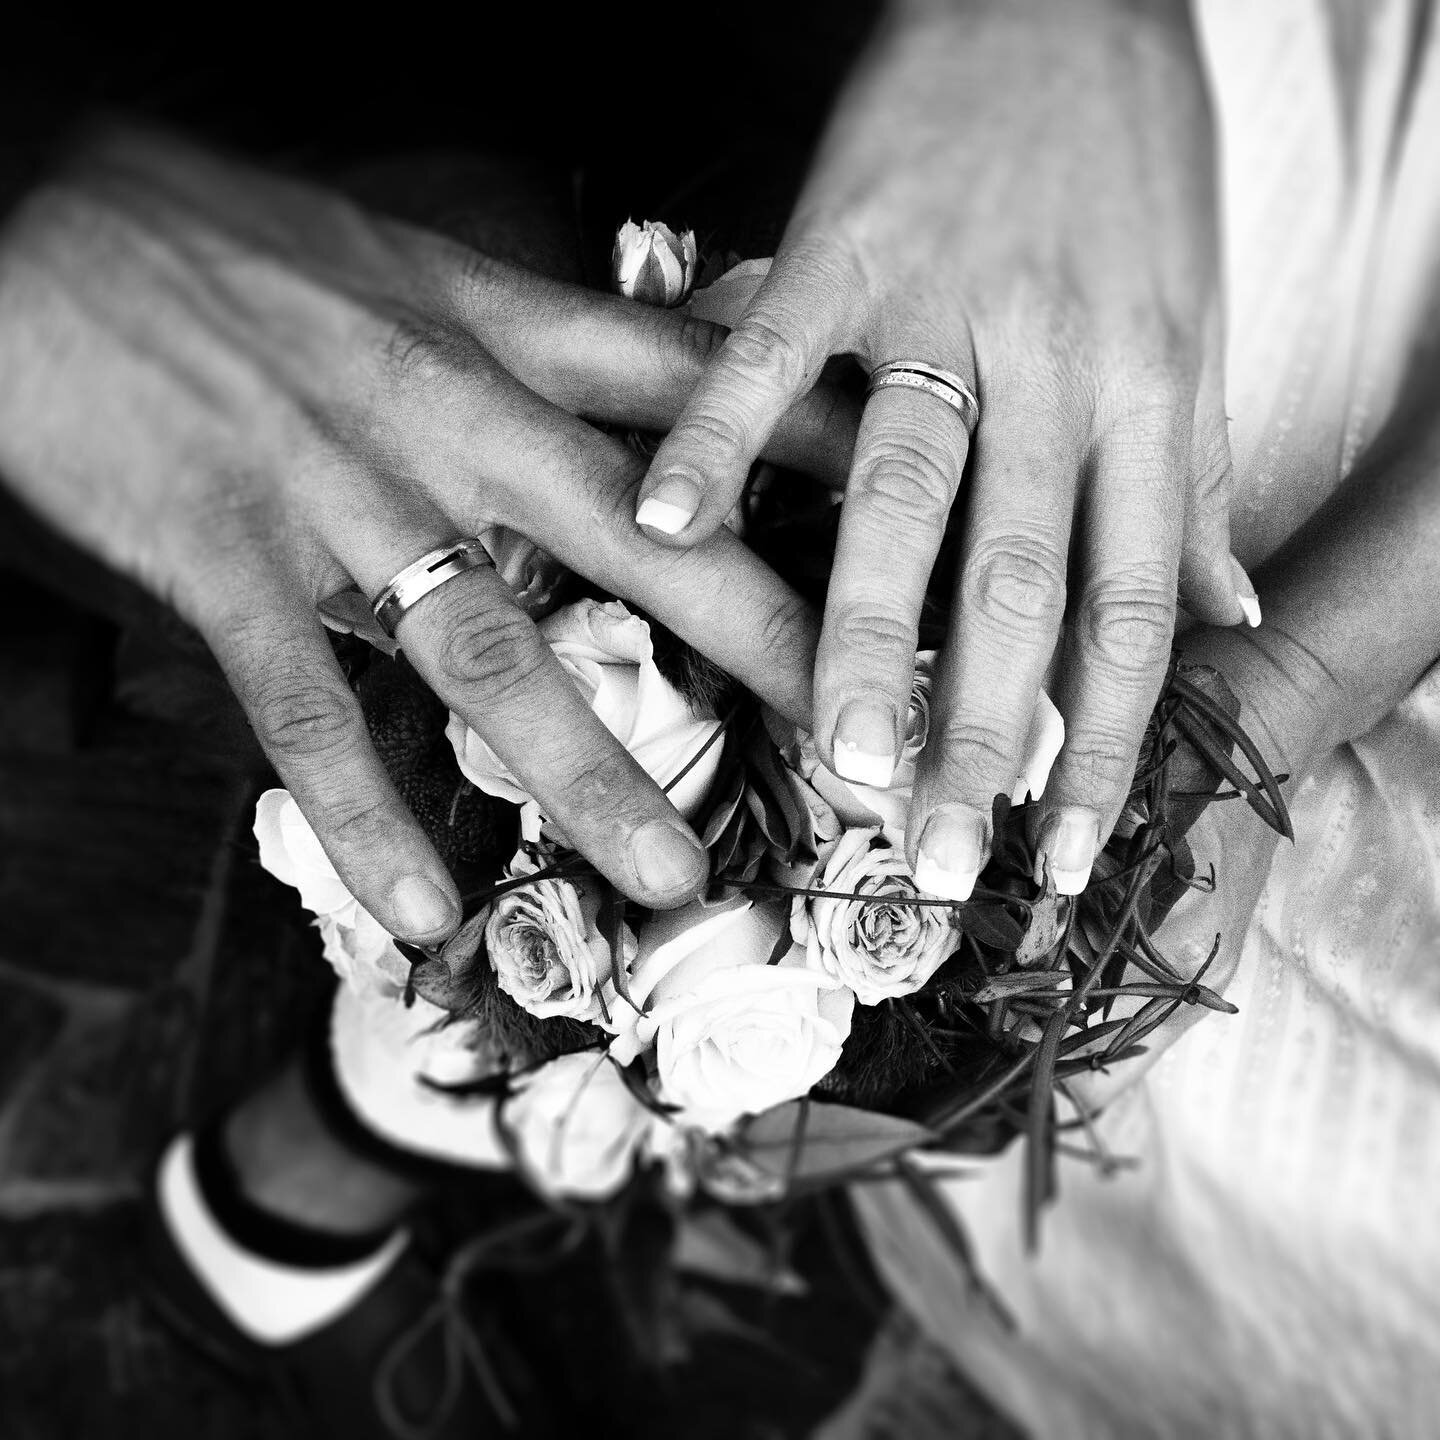 Wo liebend sich zwei Herzen einen, nur eins zu sein in Freud und Leid, da muss des Himmels Sonne scheinen und heiter l&auml;cheln jede Zeit. (Hoffmann von Fallersleben)
⁣

⁣

#weddingphotography #weddingfilms #hochzeitsfilm #hochzeitsfotografie #wedd